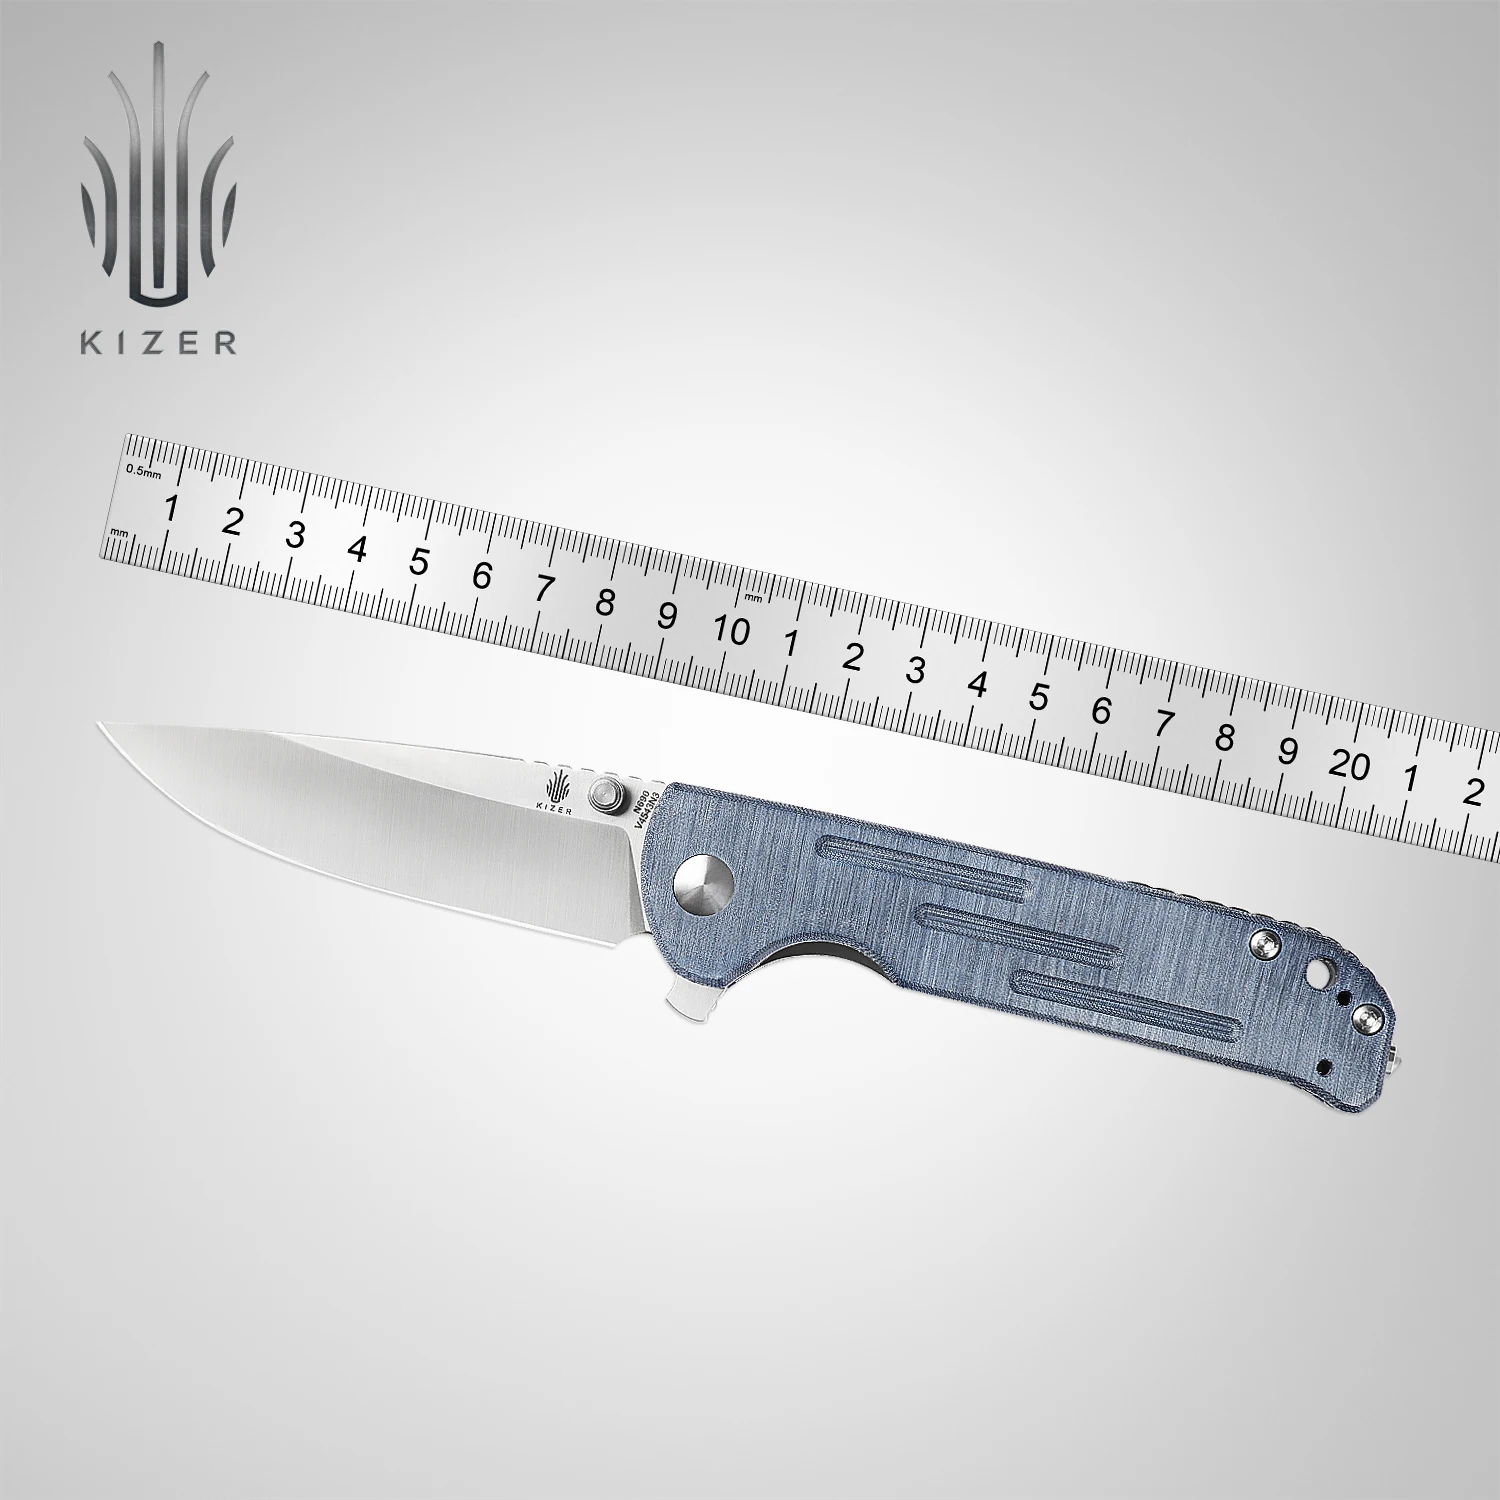 Kizer Hunting Knife V4543N3/V4543N4 Justice 2022 New Green/Blue Demin Micarta &N690 Steel Blade Self Defense Knife